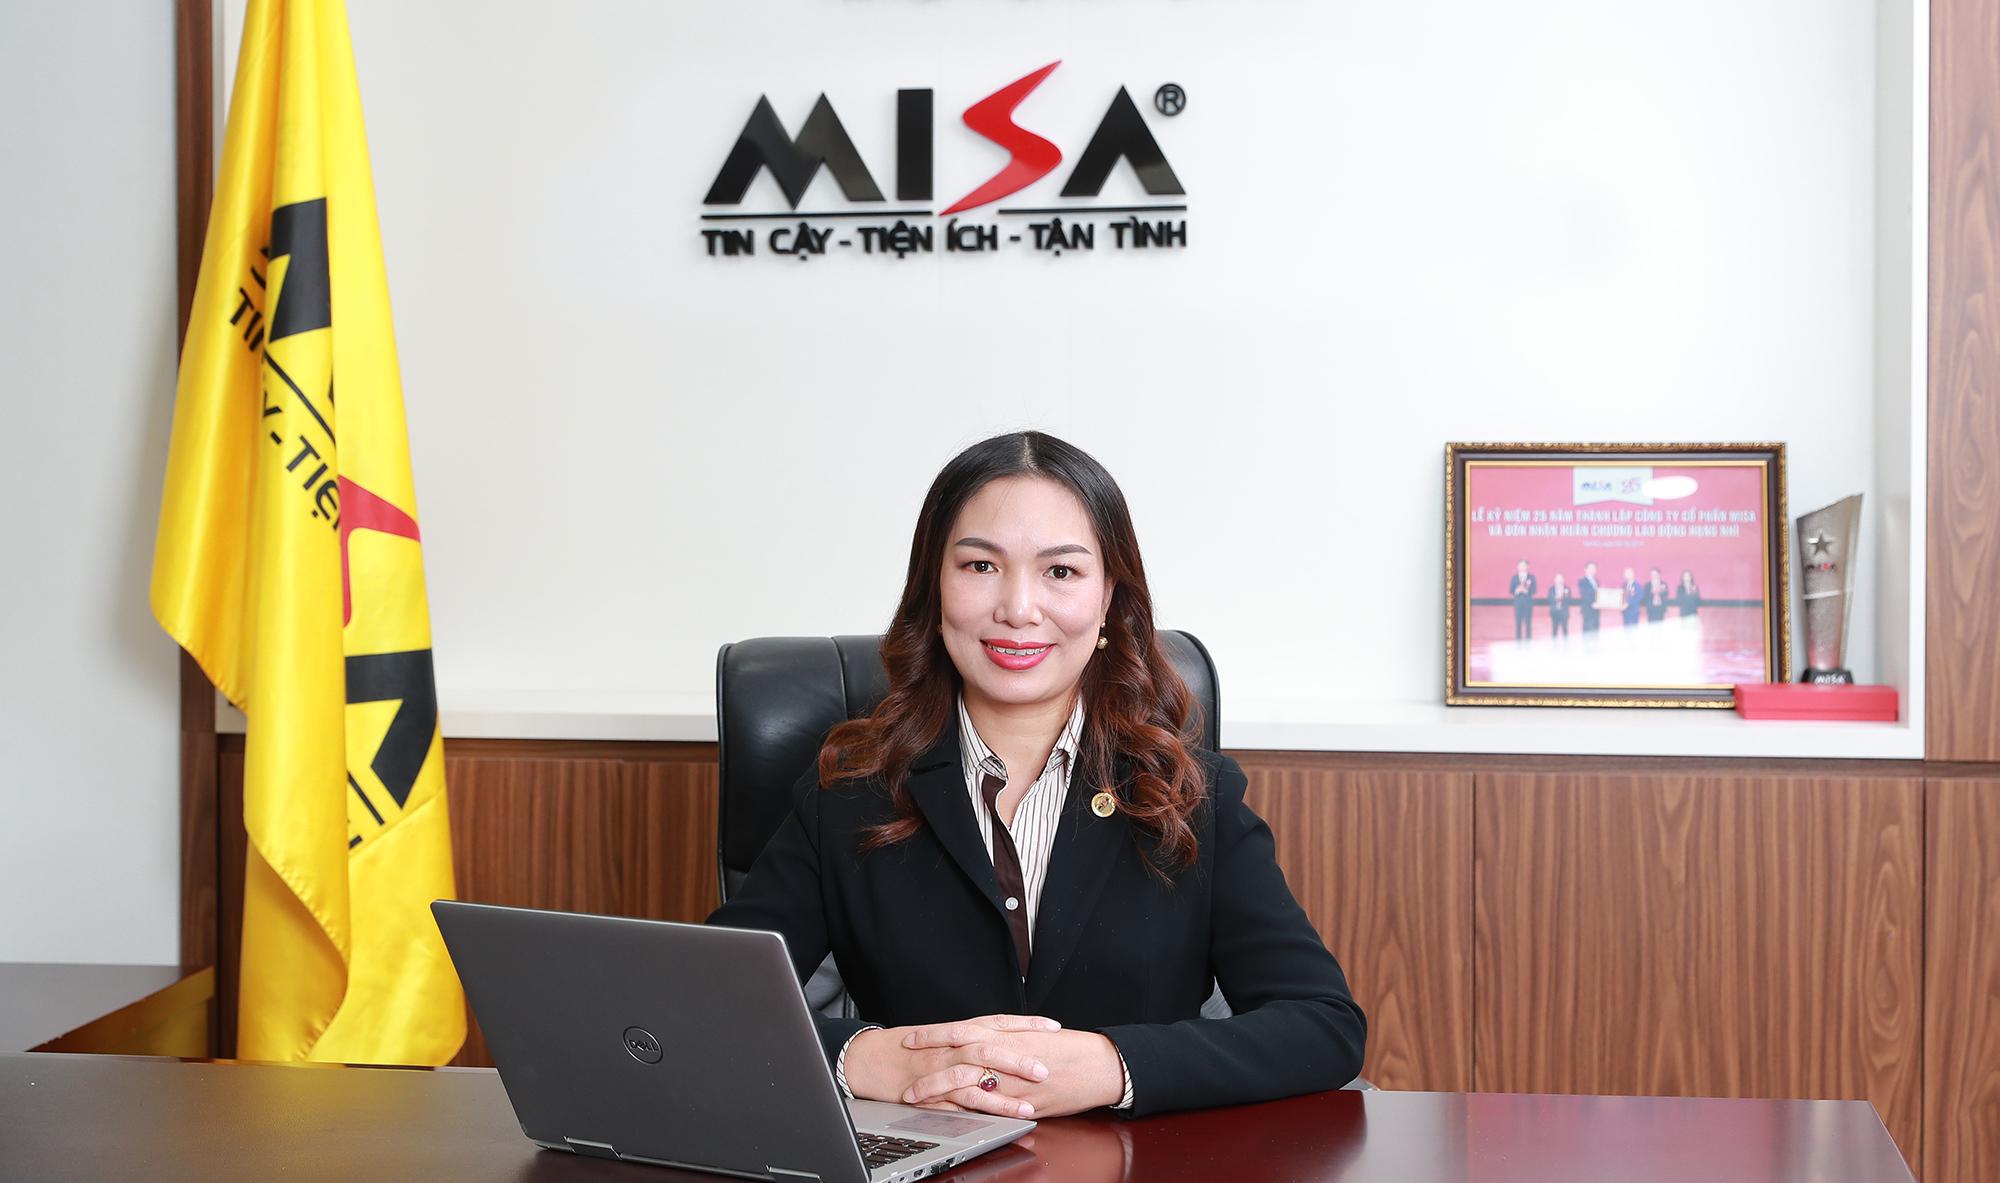 Bà Đinh Thị Thúy – Tổng Giám đốc Công ty Cổ phần Misa.